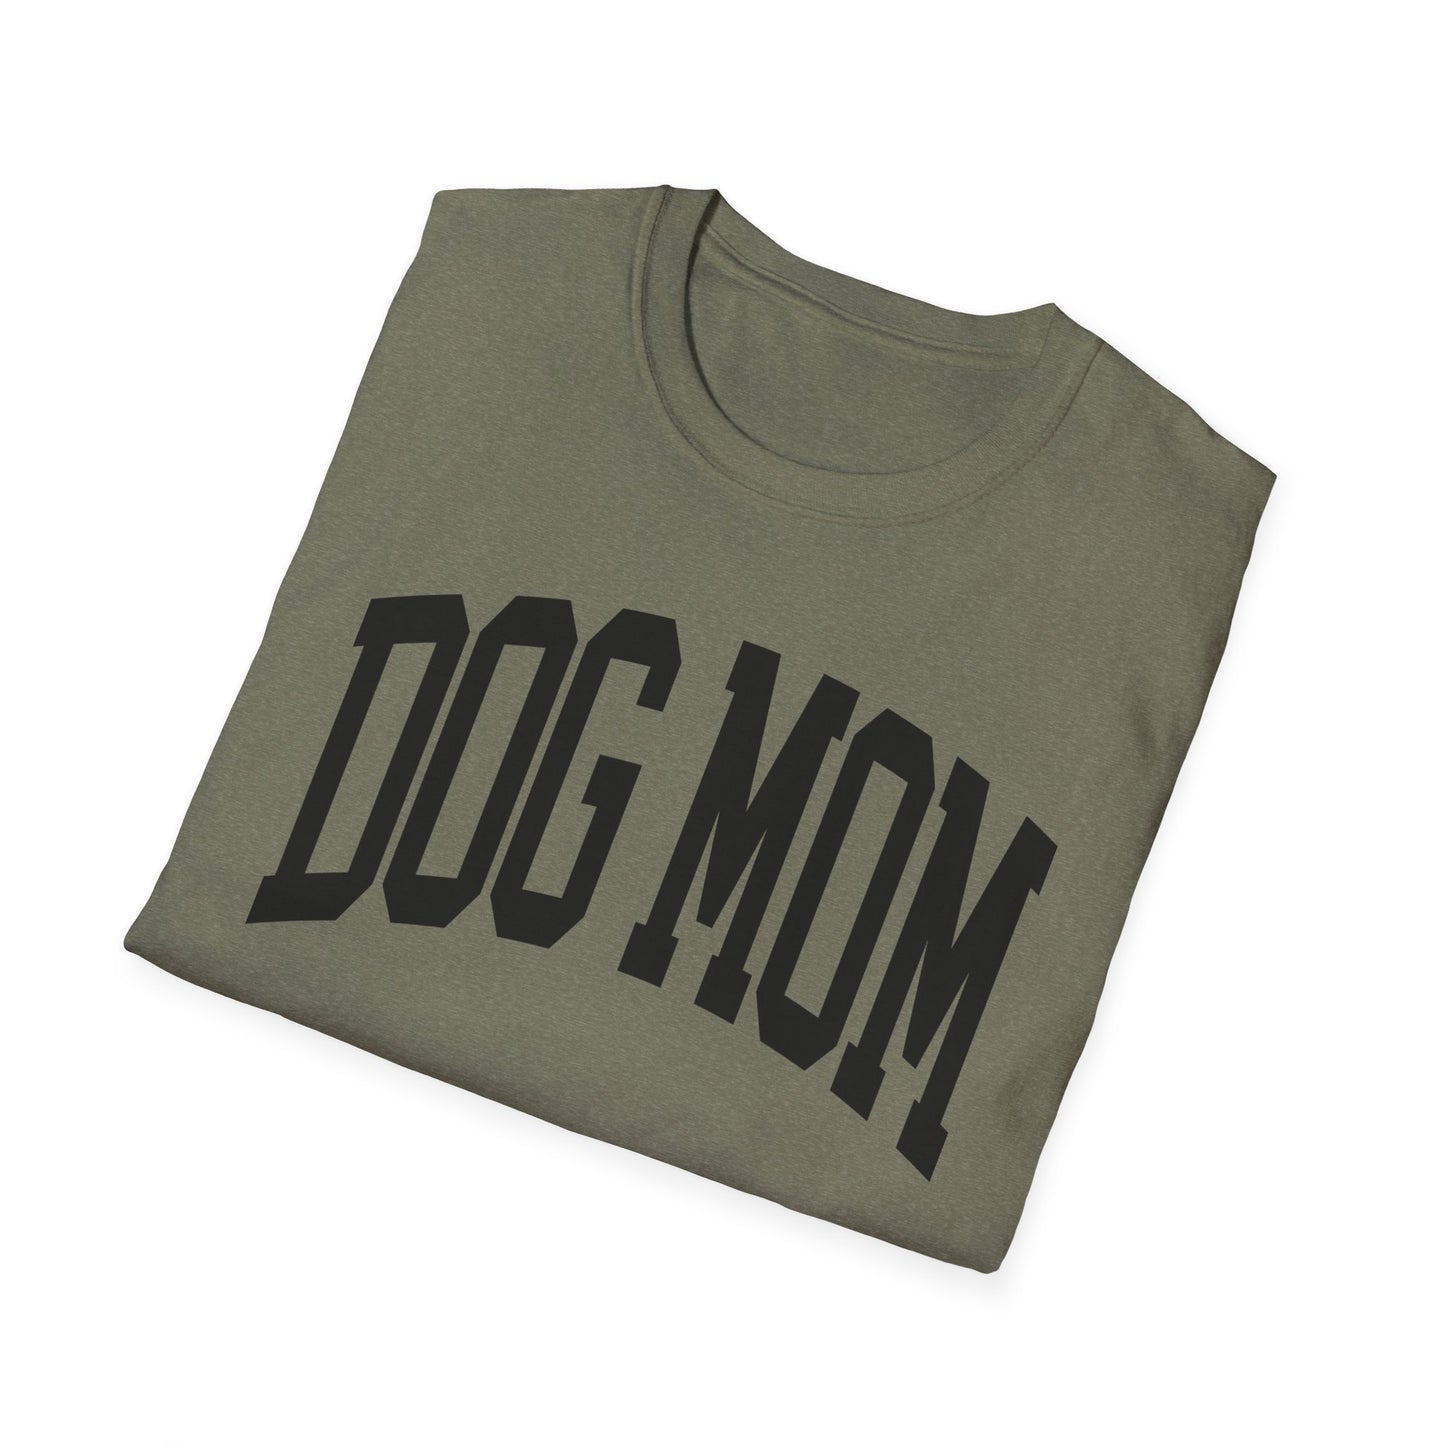 DOG MOM UNIVERSITY - Unisex Softstyle T-Shirt